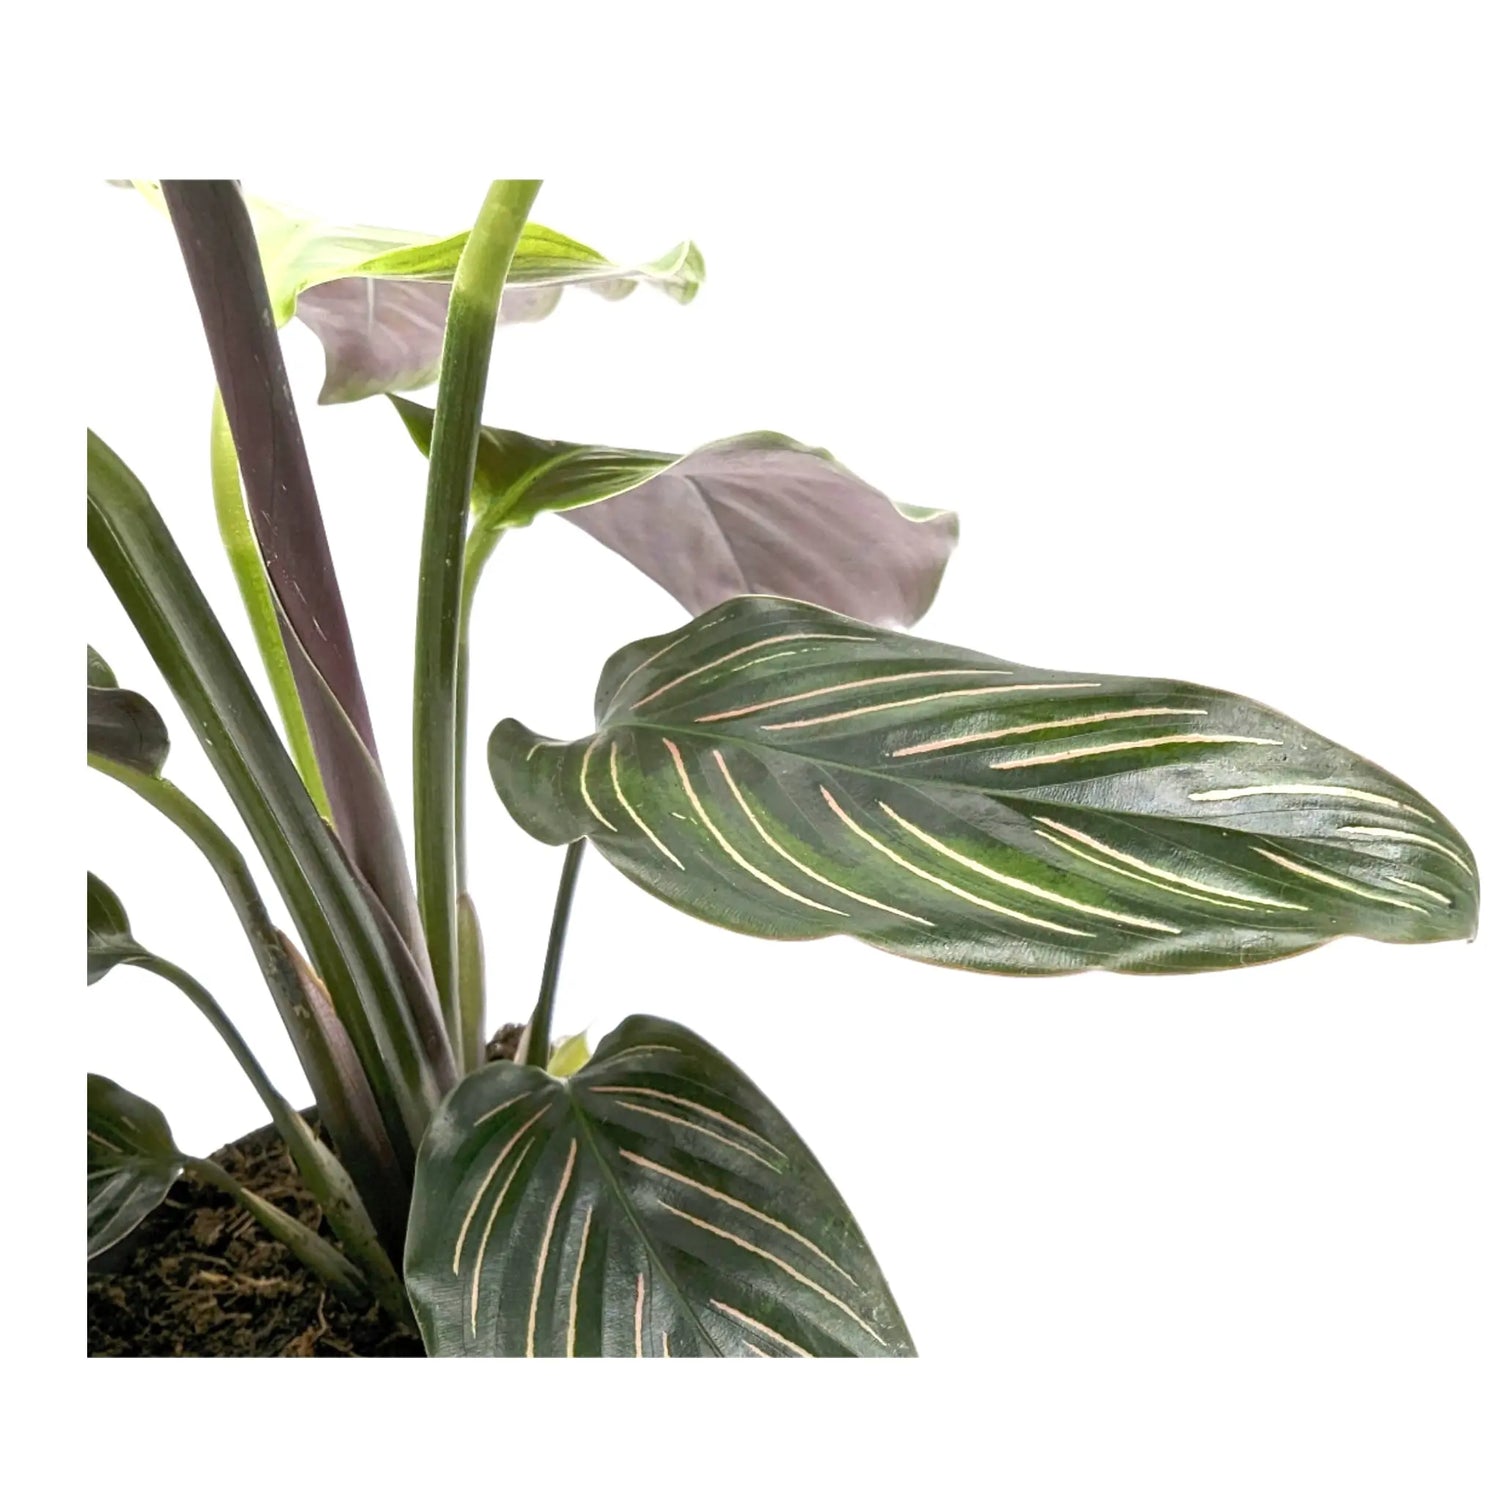 Calathea Beautystar - Prayer Plant Leaf Culture